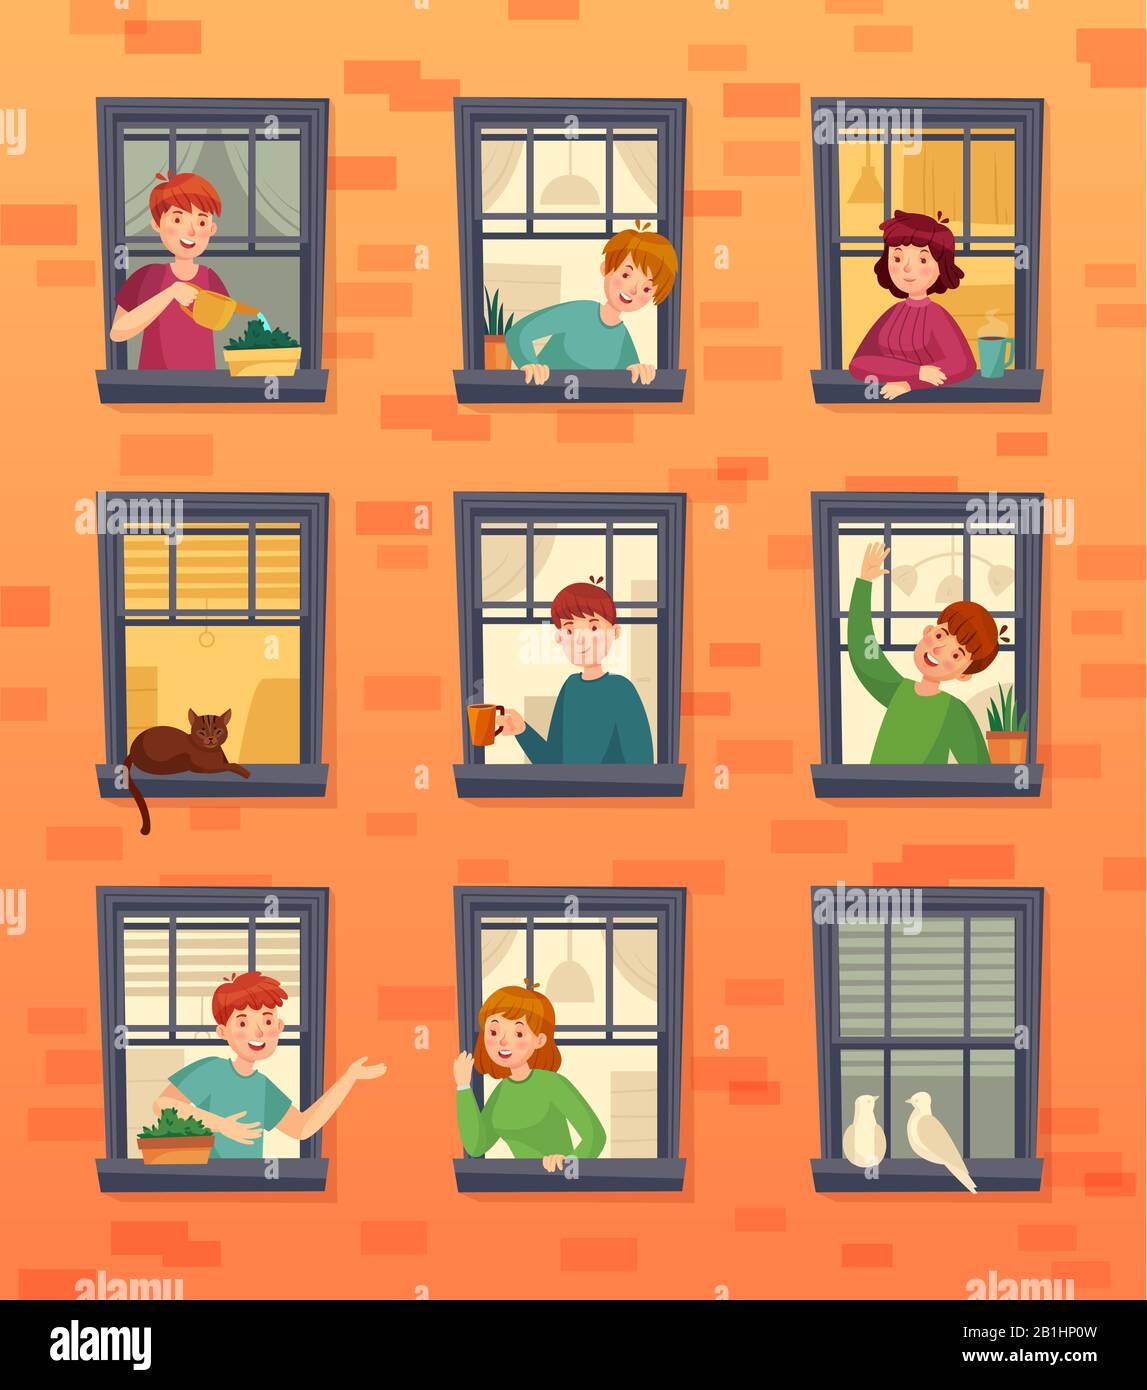 Personen in Fensterrahmen. Kommunizierende Nachbarn, Blick auf Fenster und Stadtbewohner Cartoon-Vektor-Illustration Stock Vektor